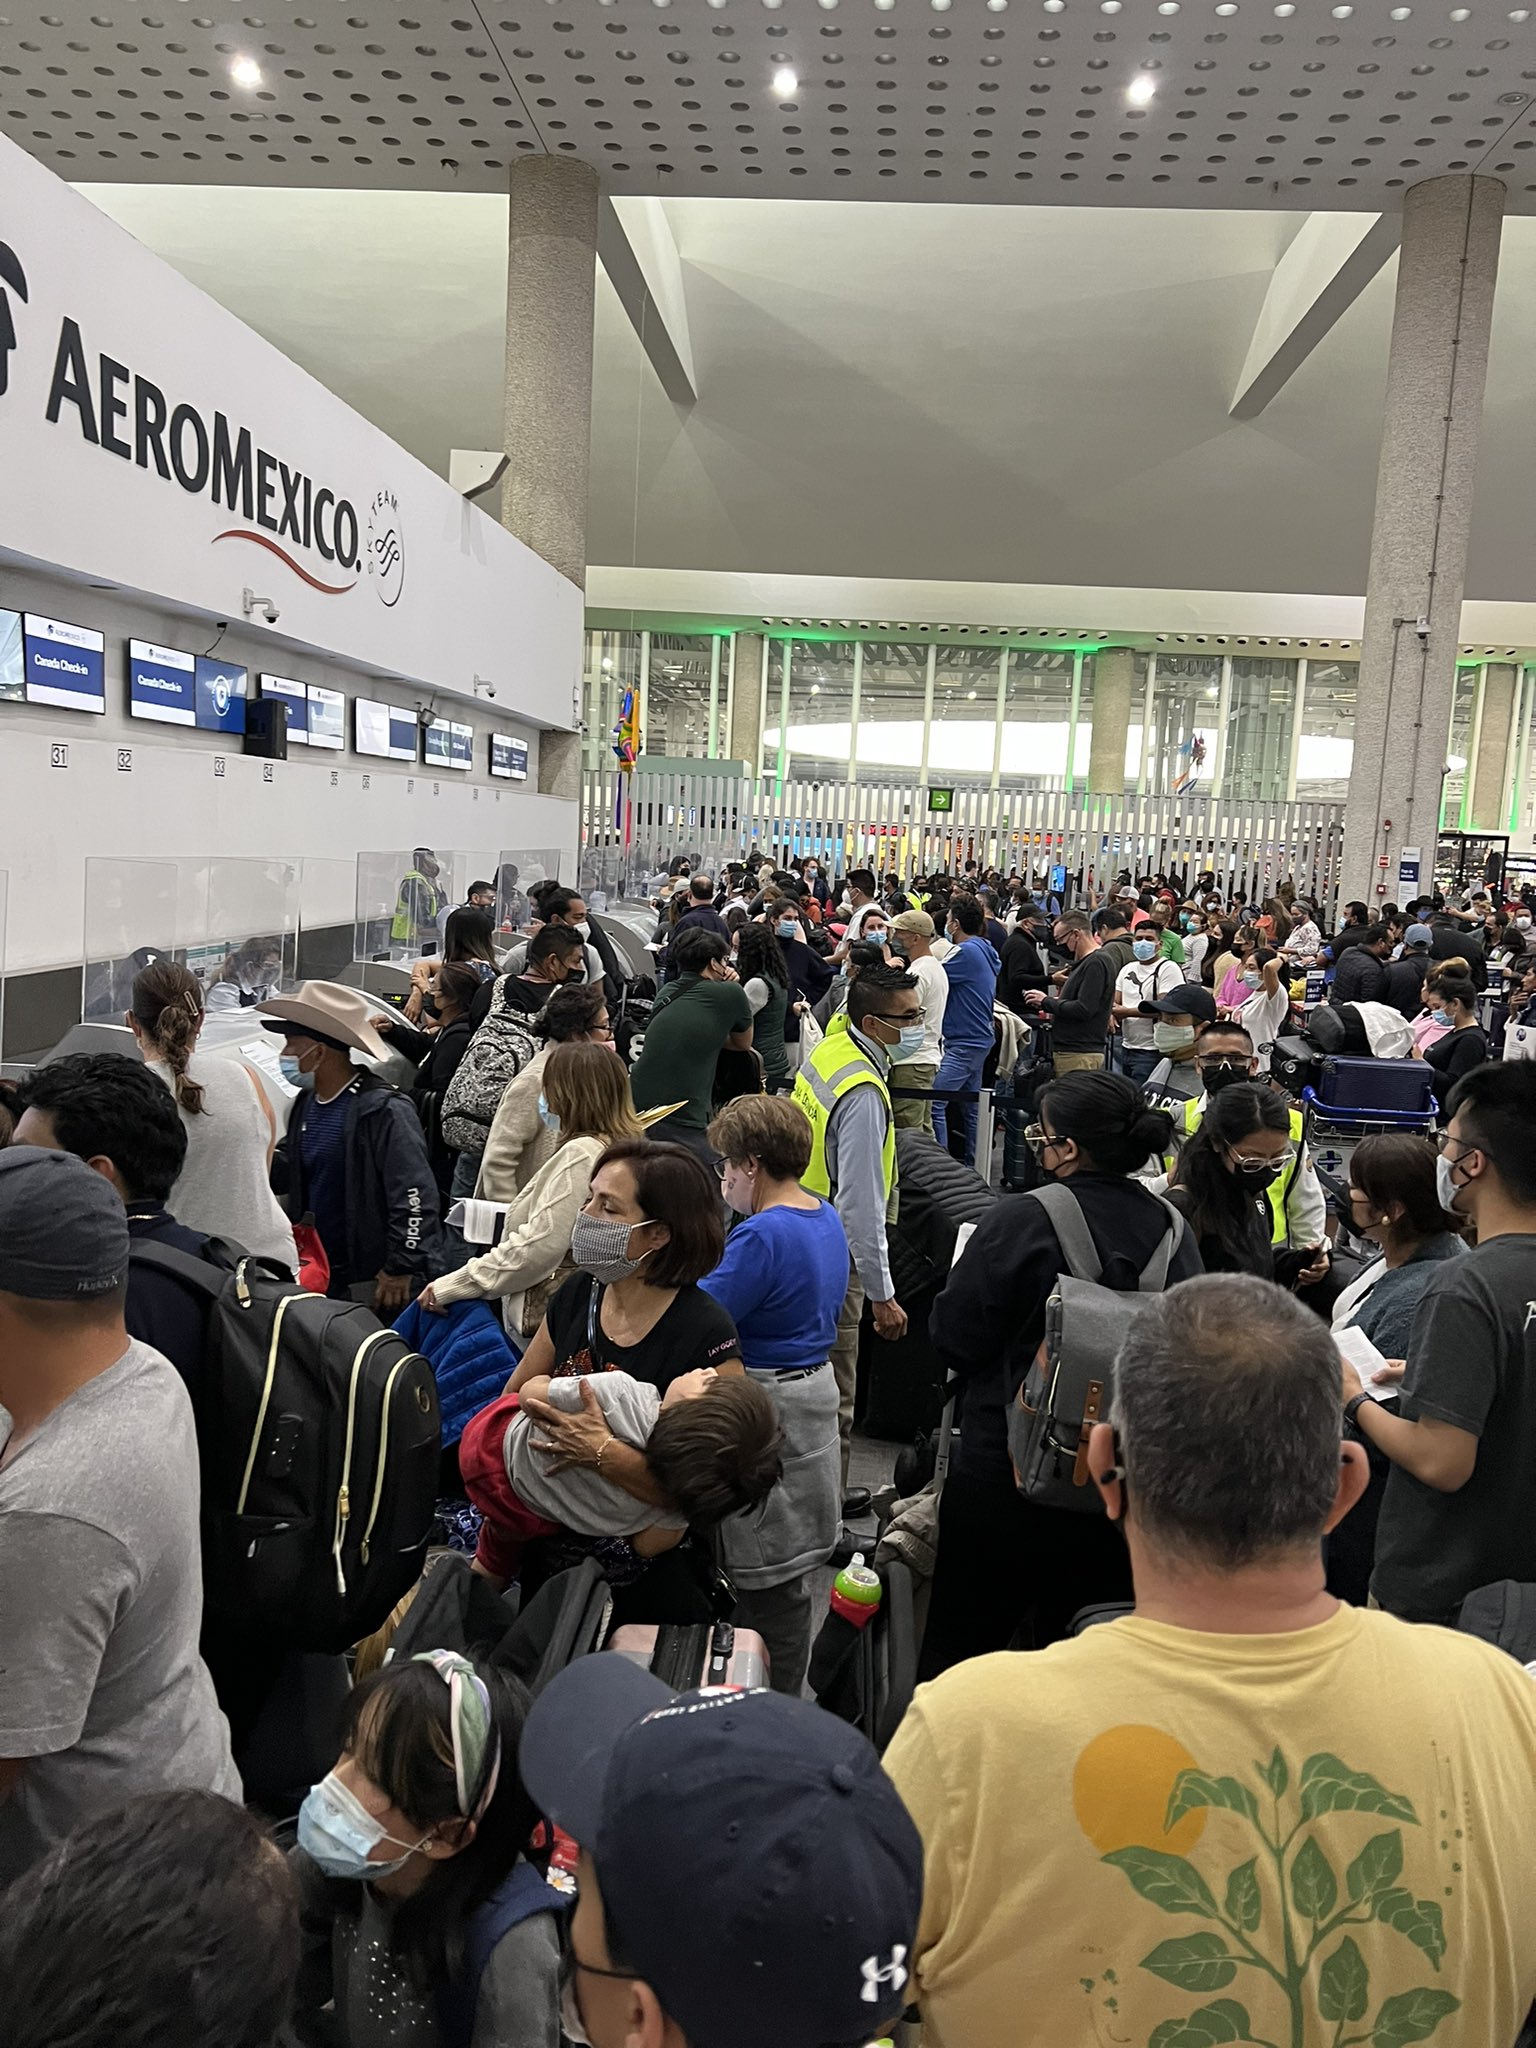 Usuarios en redes sociales denunciaron horas de espera sin que Aeromexico respondiera a sus vuelos cancelados. (Foto: Twitter @kikeaguilar)